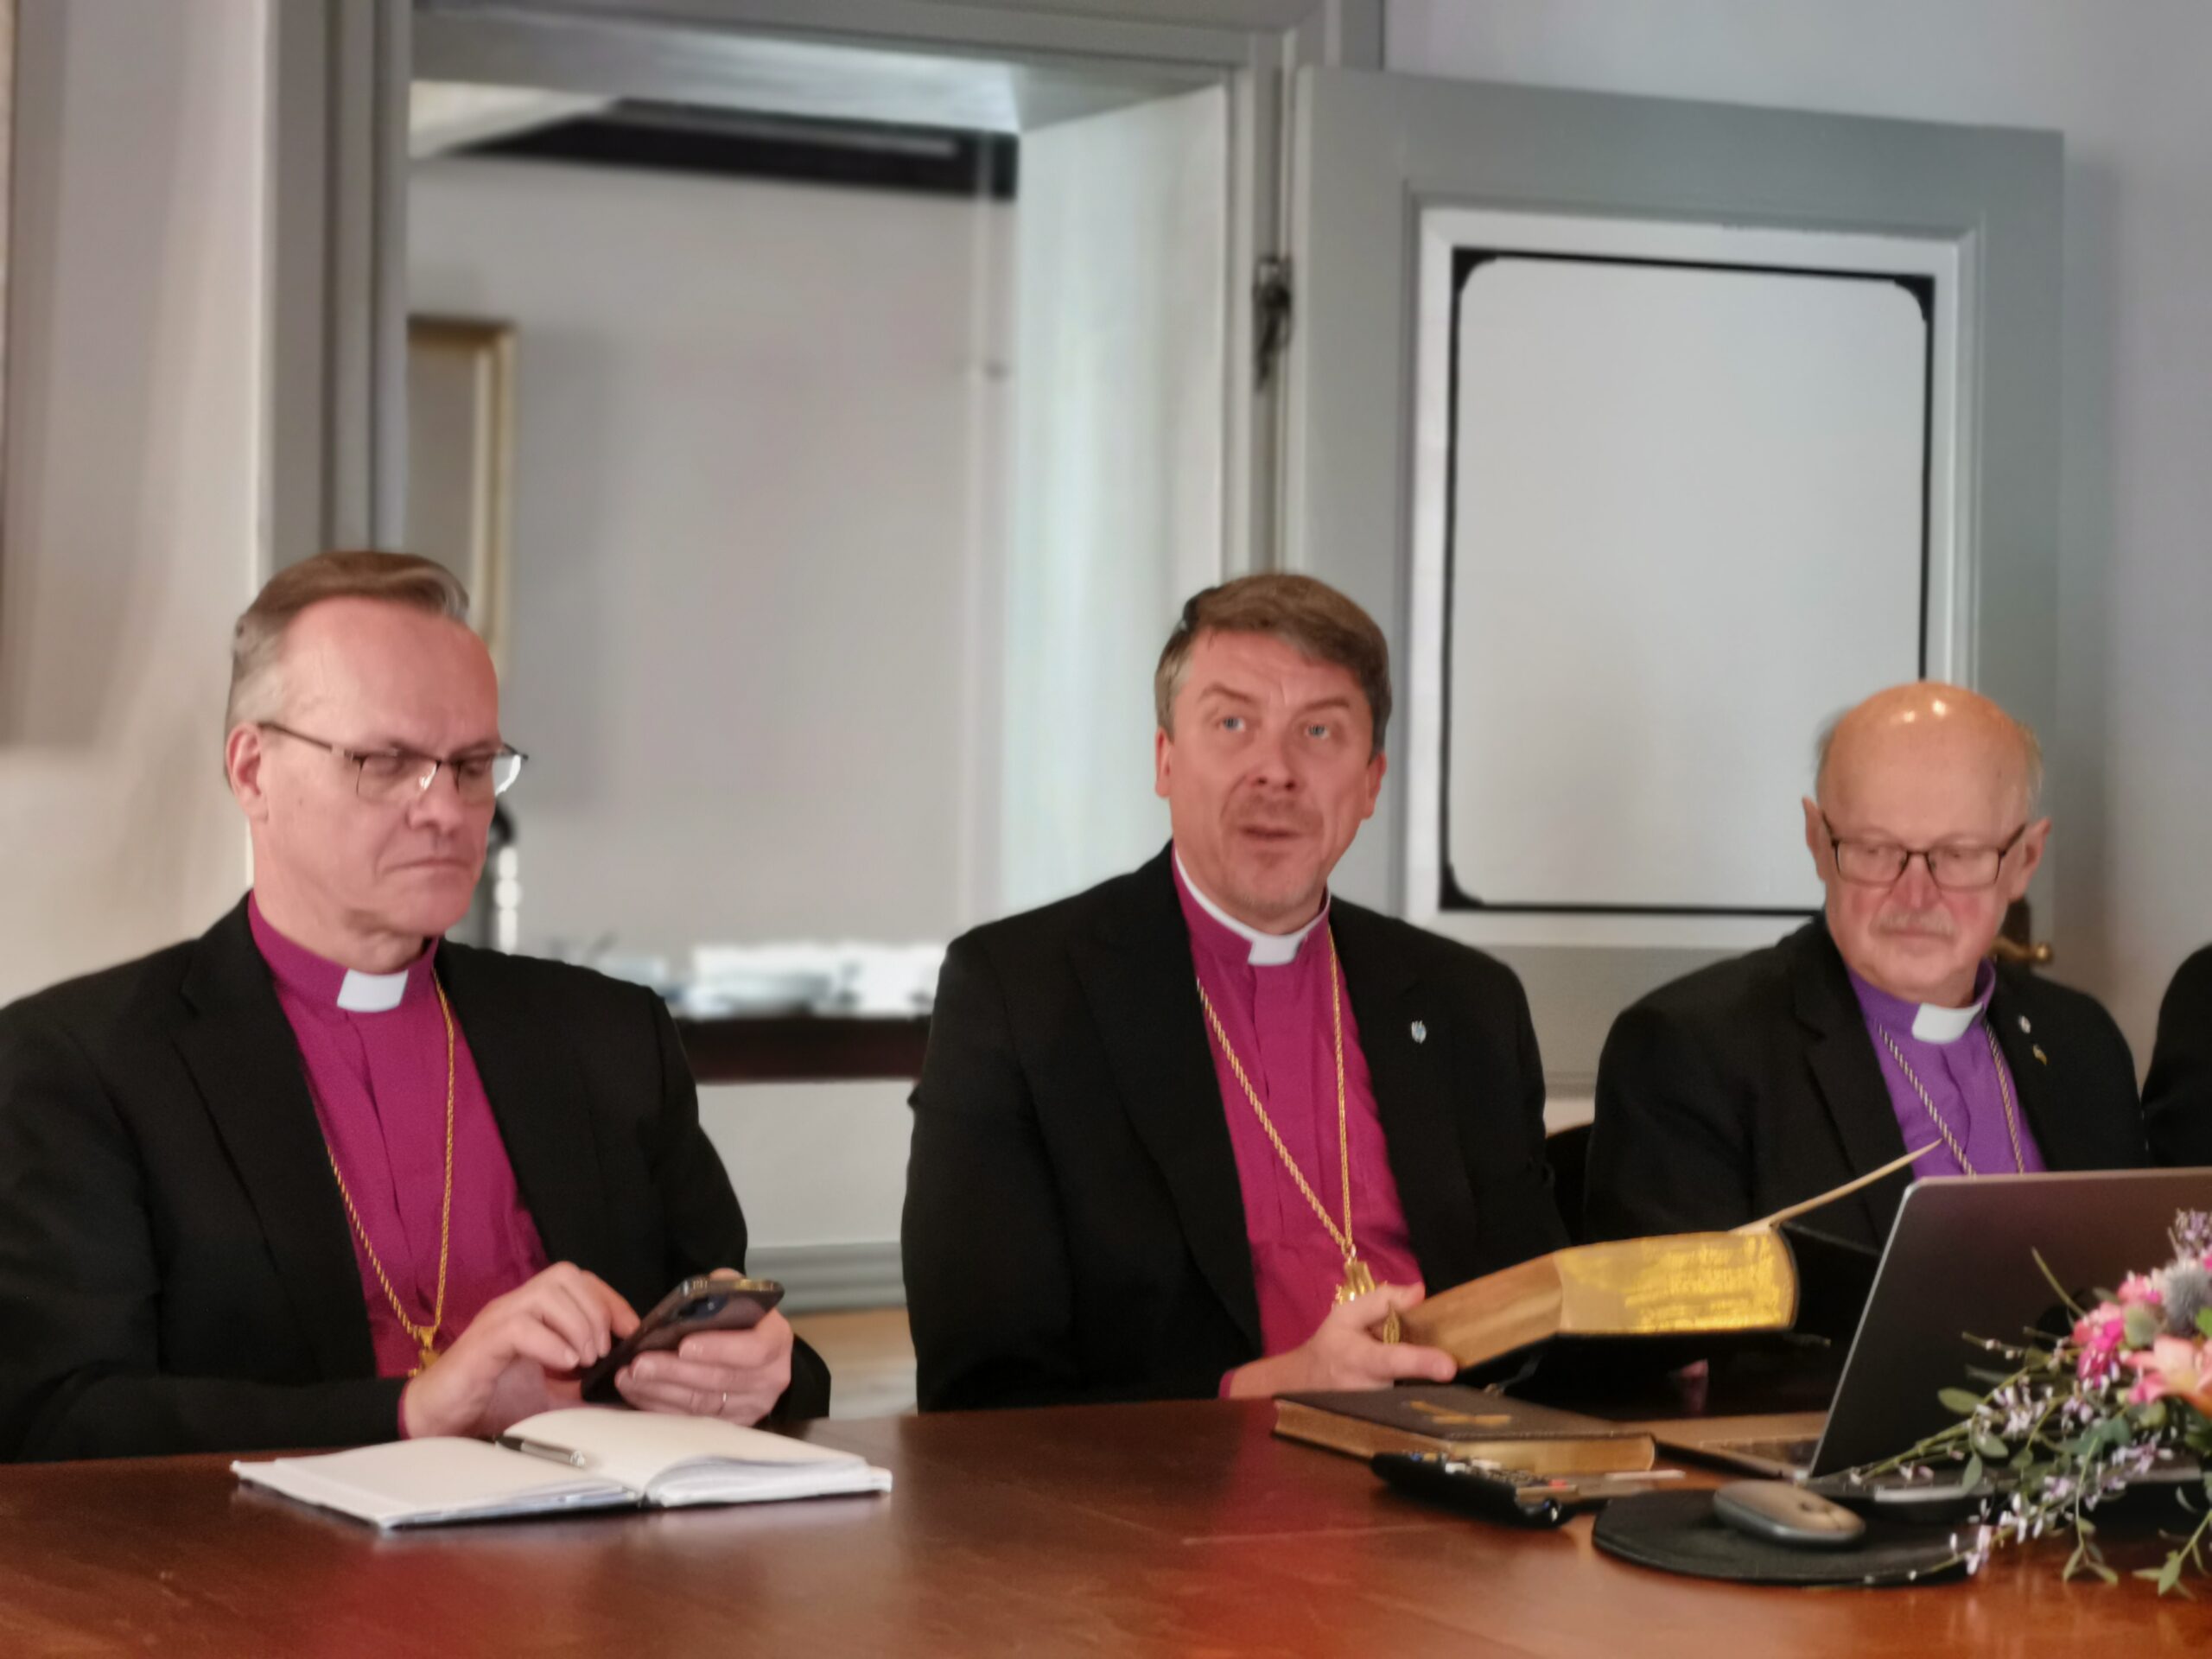 Mis oli jutuks Soome ja Eesti kirikuvalitsuste kohtumisel?